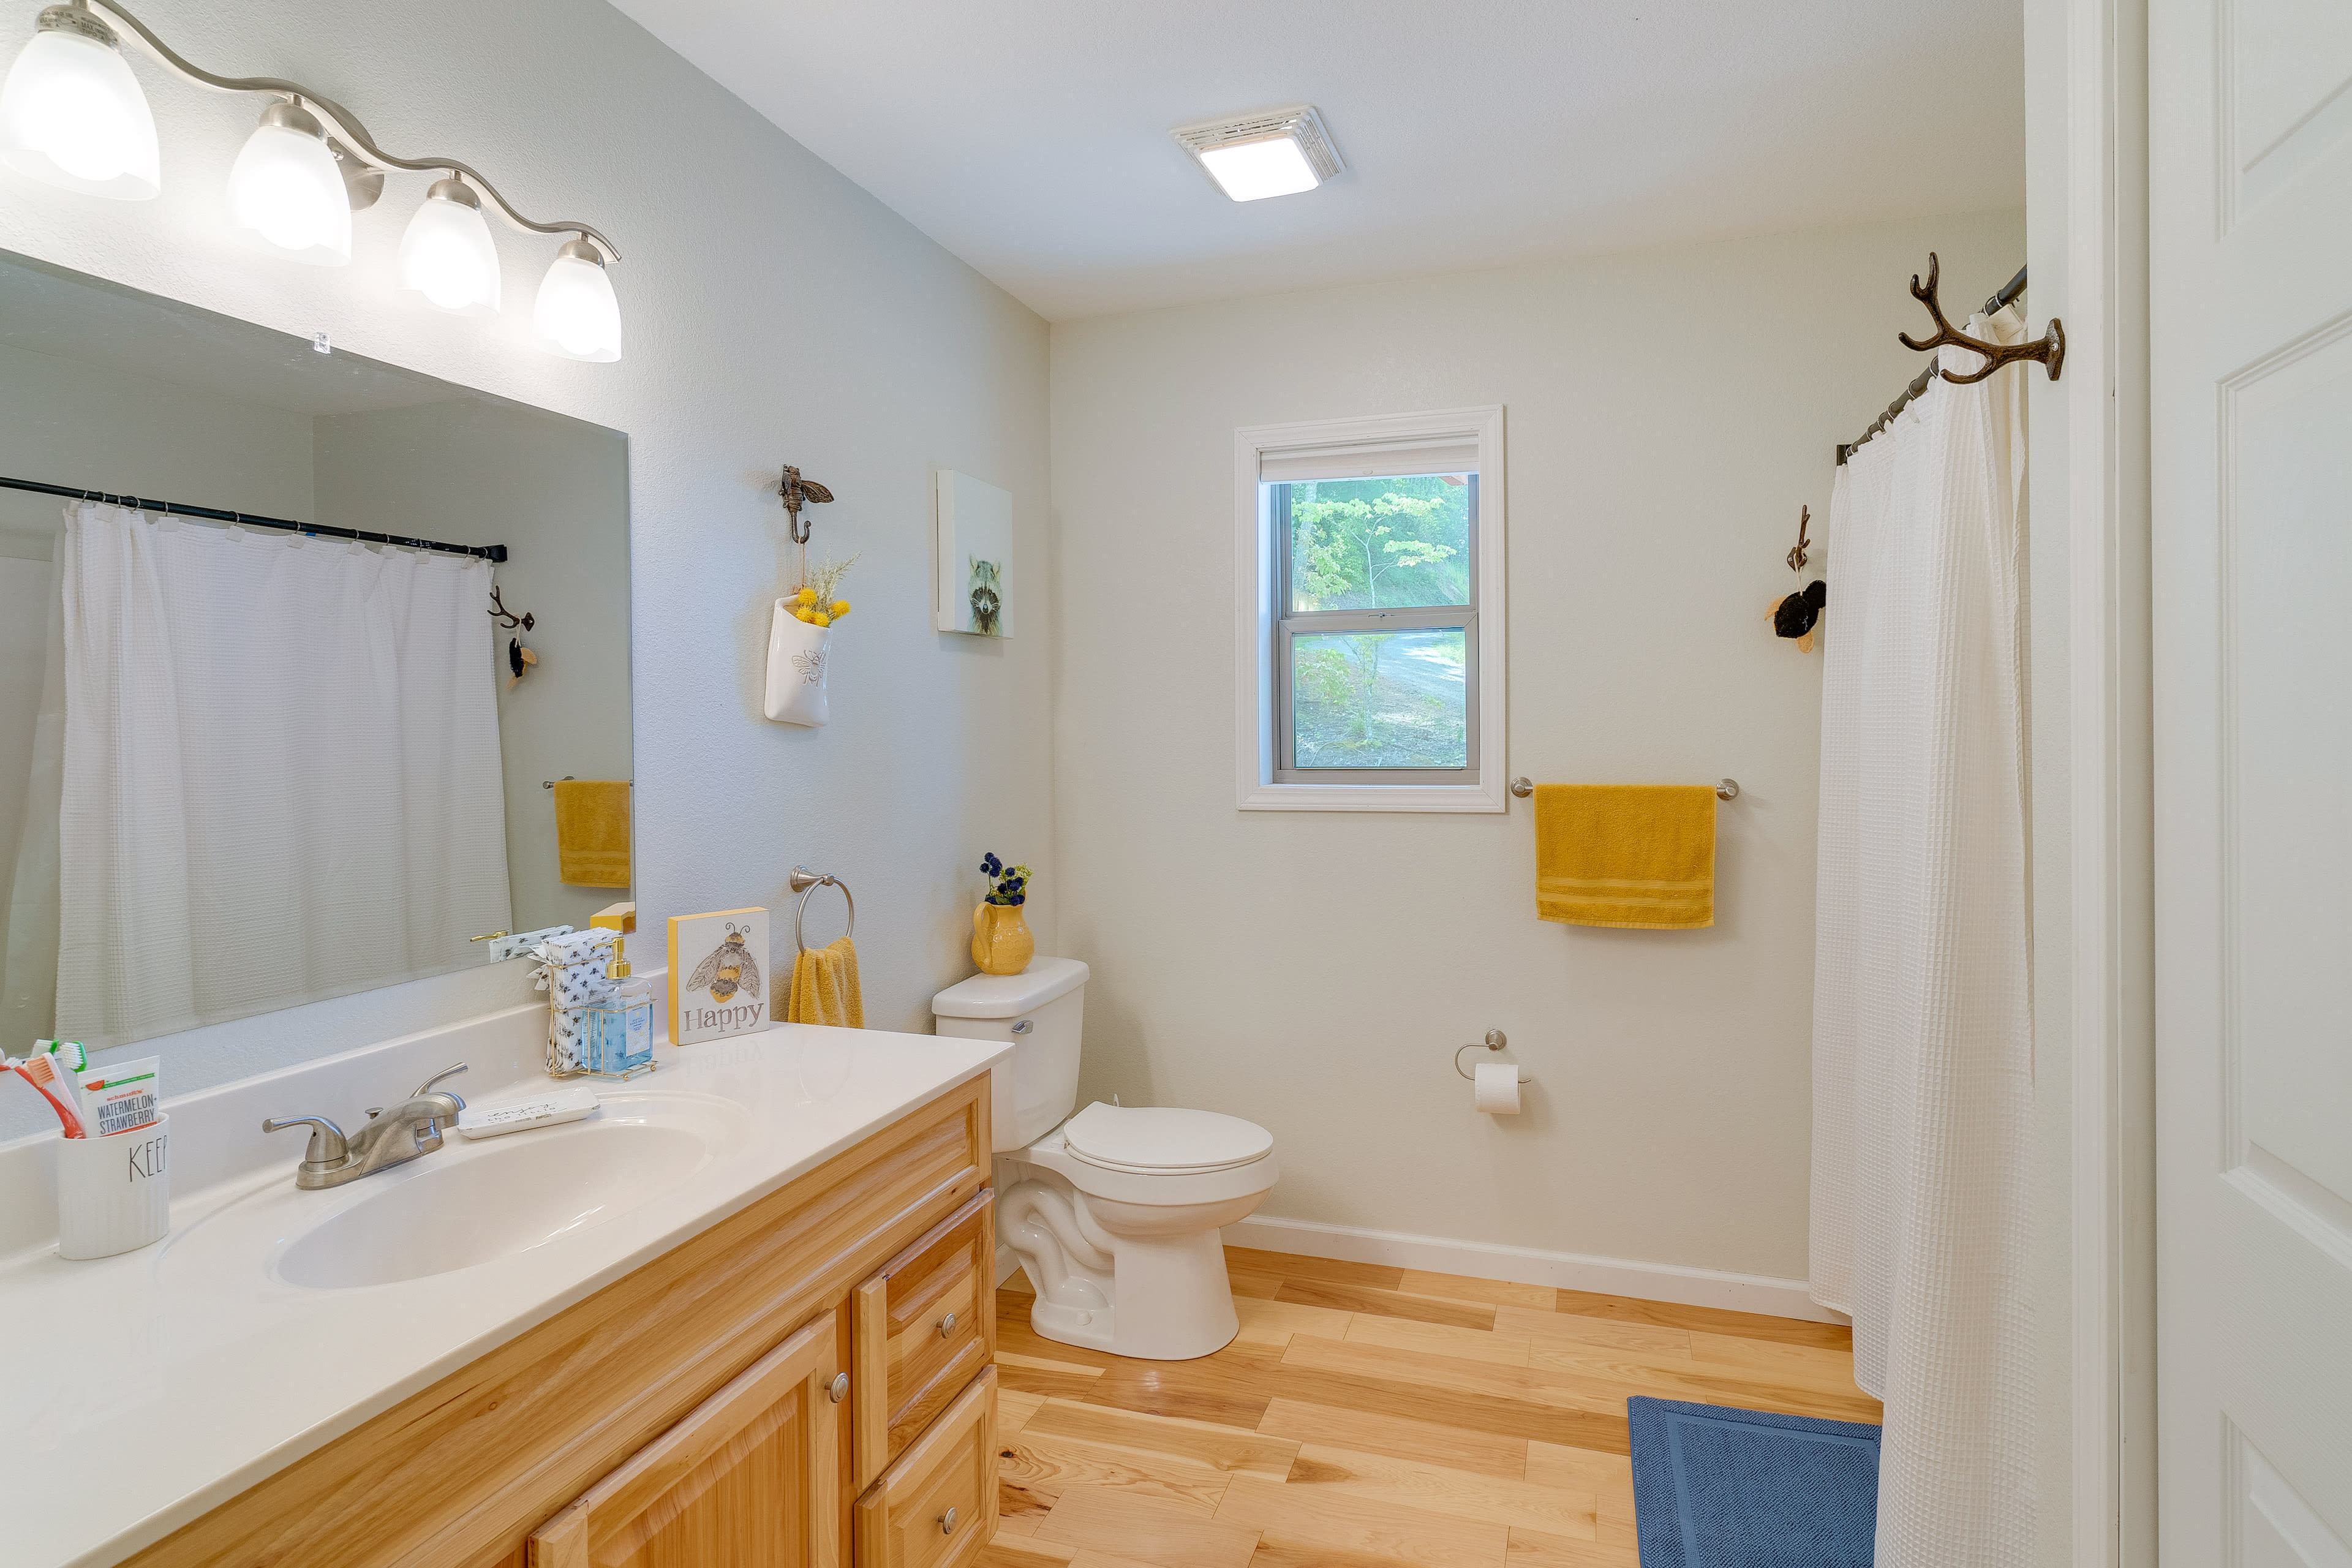 Full Bathroom | 1st Floor | Shower/Tub Combo | Washer/Dryer | Hangers